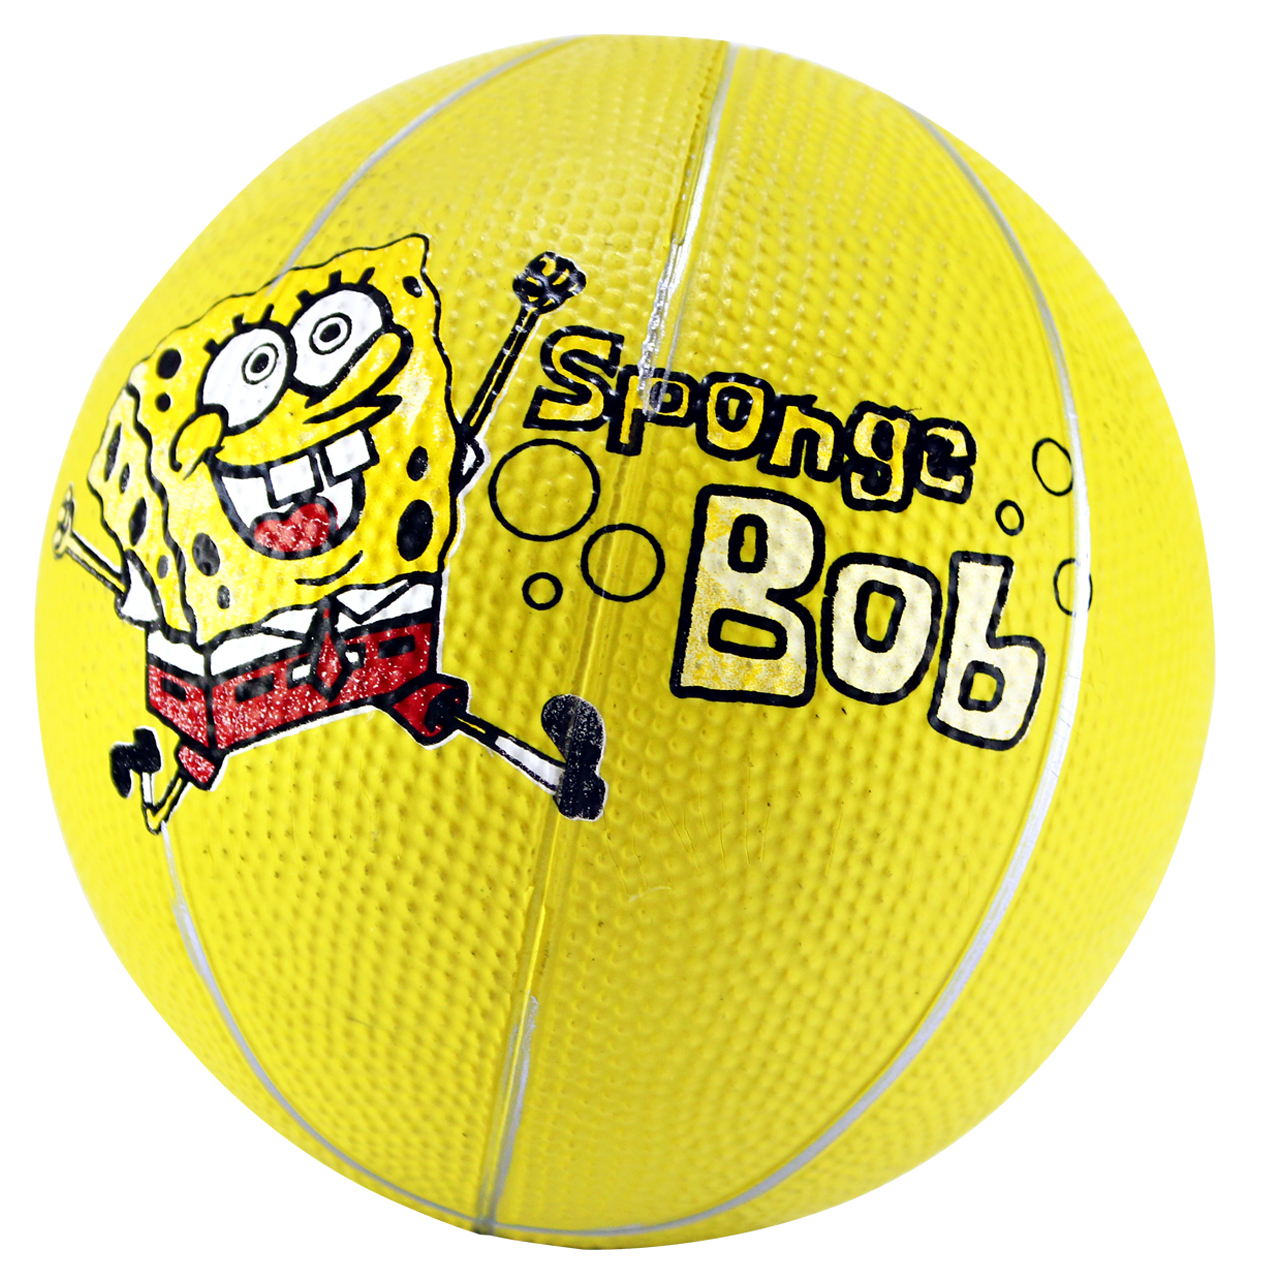 مینی توپ بسکتبال مدل Sponge Bob کد 14070016 سایز 3